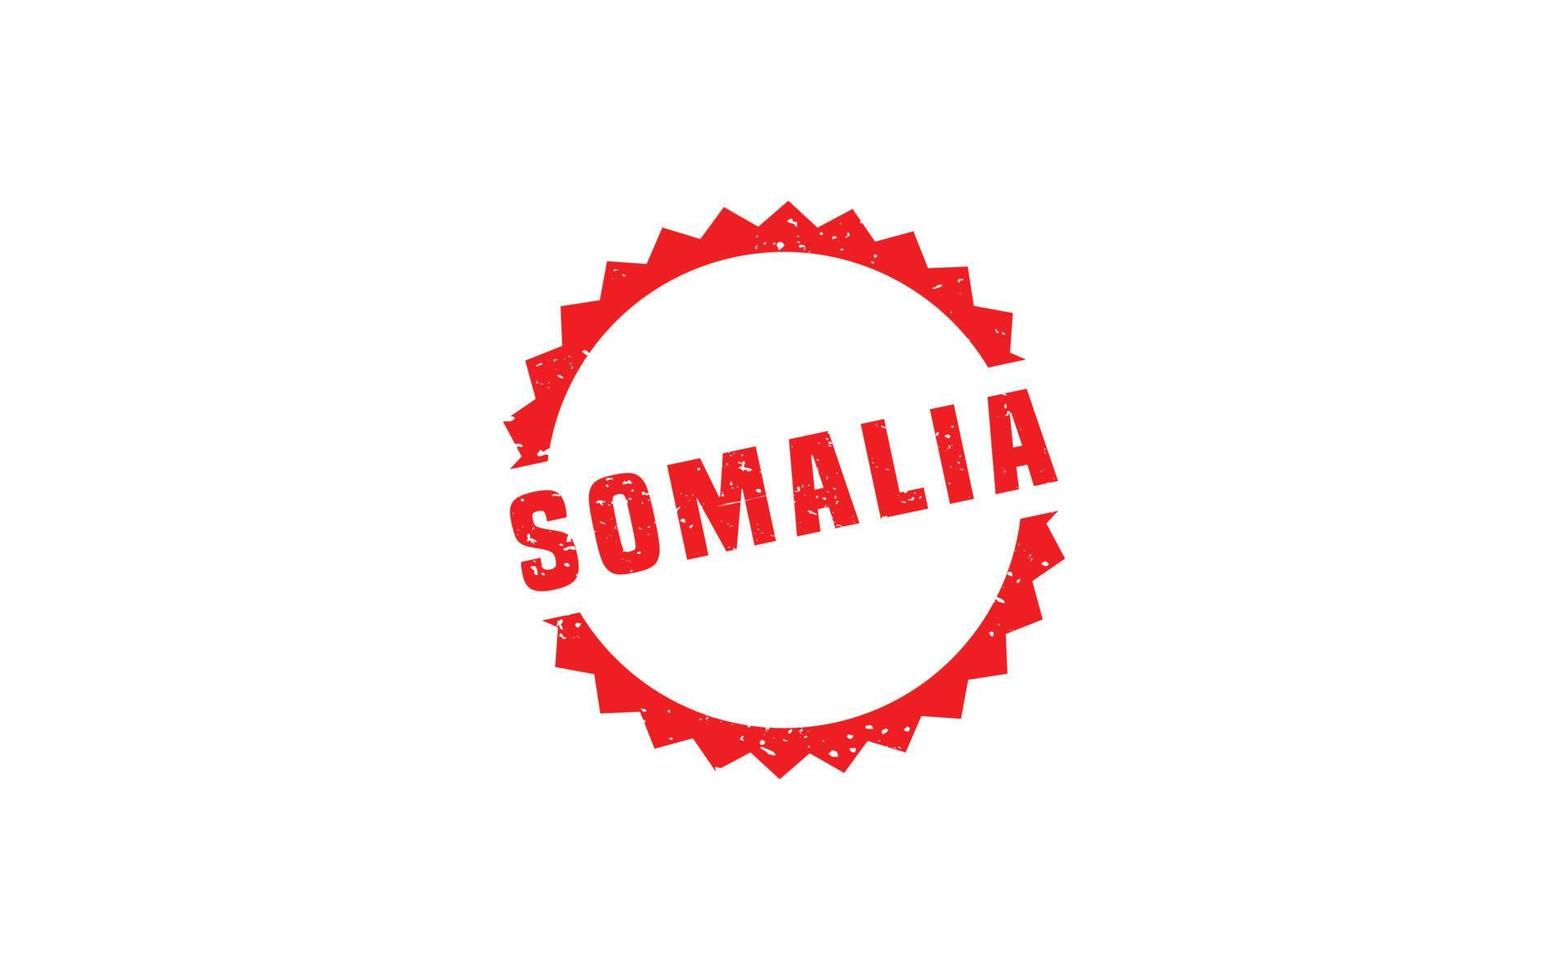 Somalia sello caucho con grunge estilo en blanco antecedentes vector